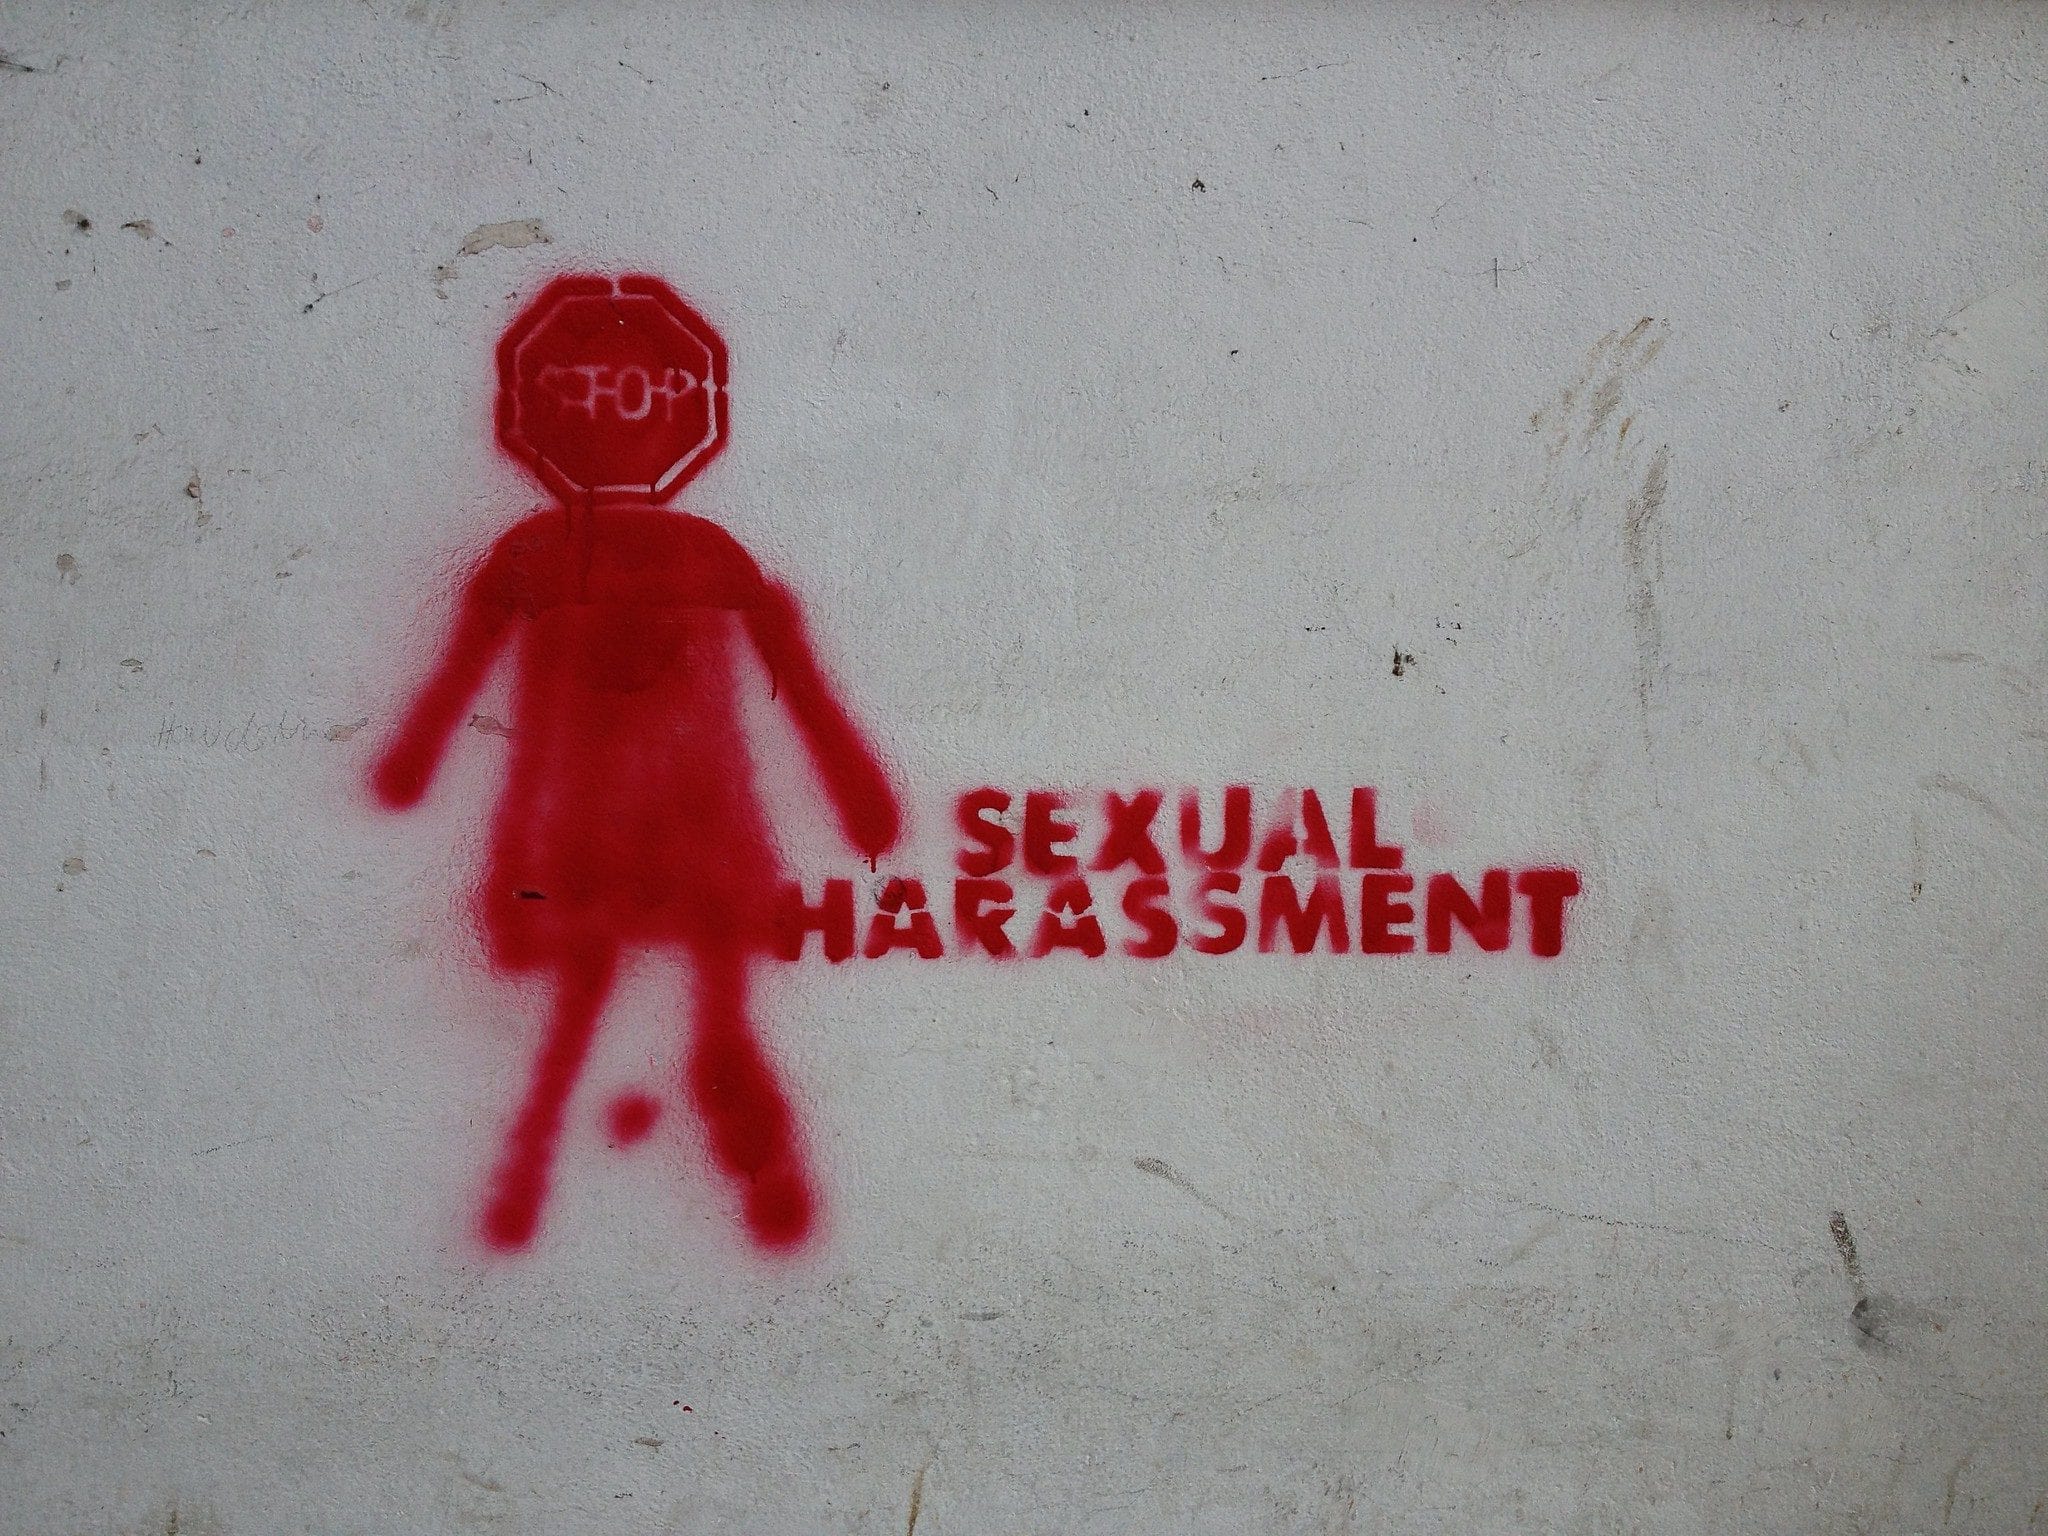 Halte au harcèlement sexuel (Photo Patrick Devries / FlickR / cc)